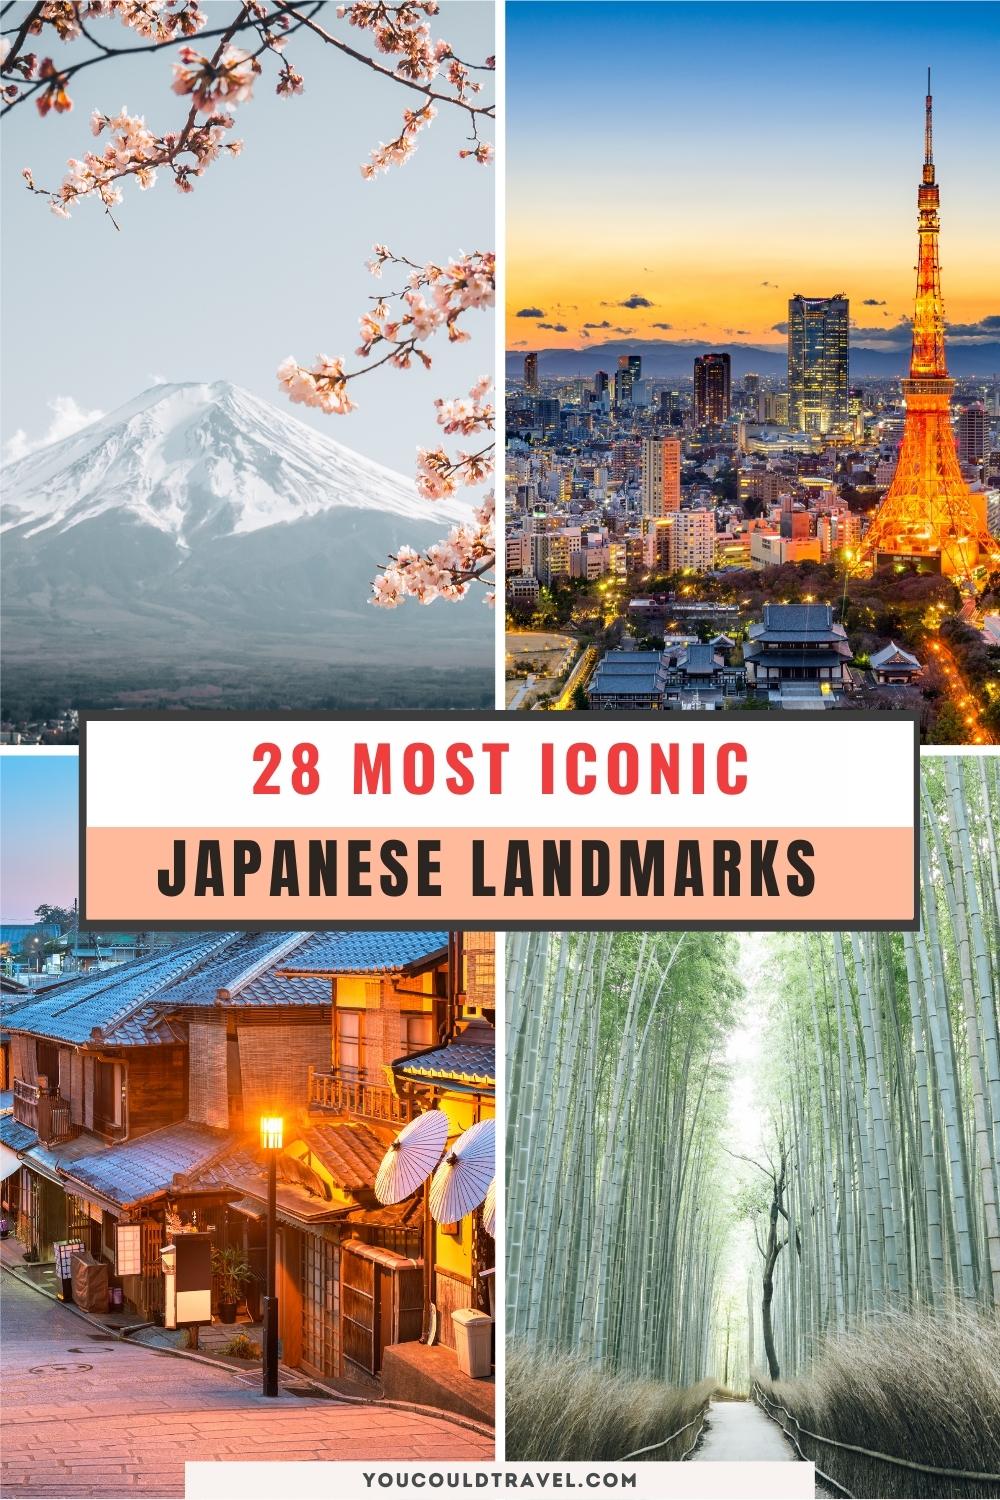 Most iconic Japanese landmarks